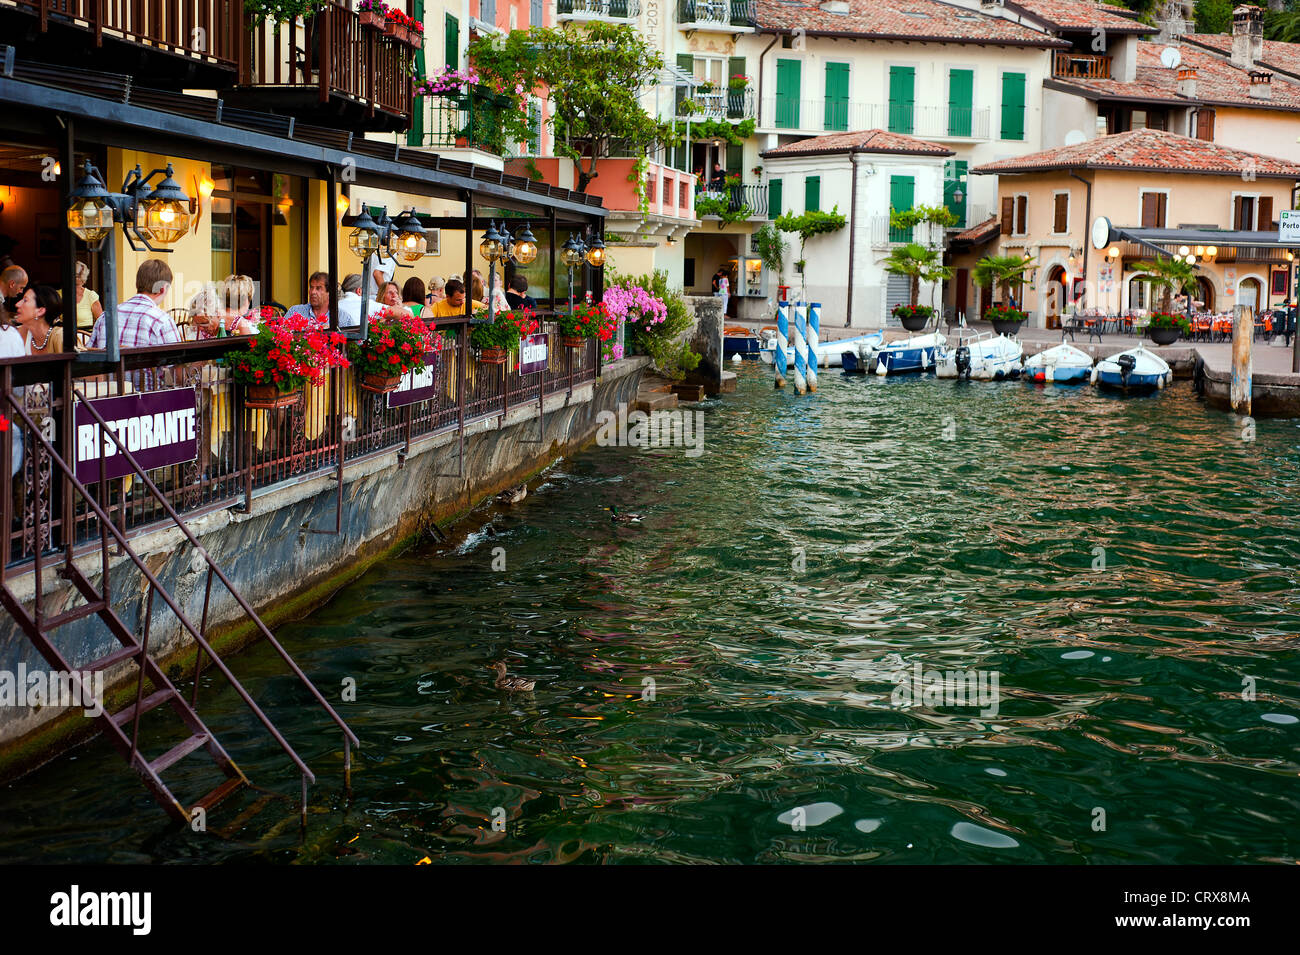 Ristorante direttamente sul lago, Limone sul Garda lombardia italia Foto Stock